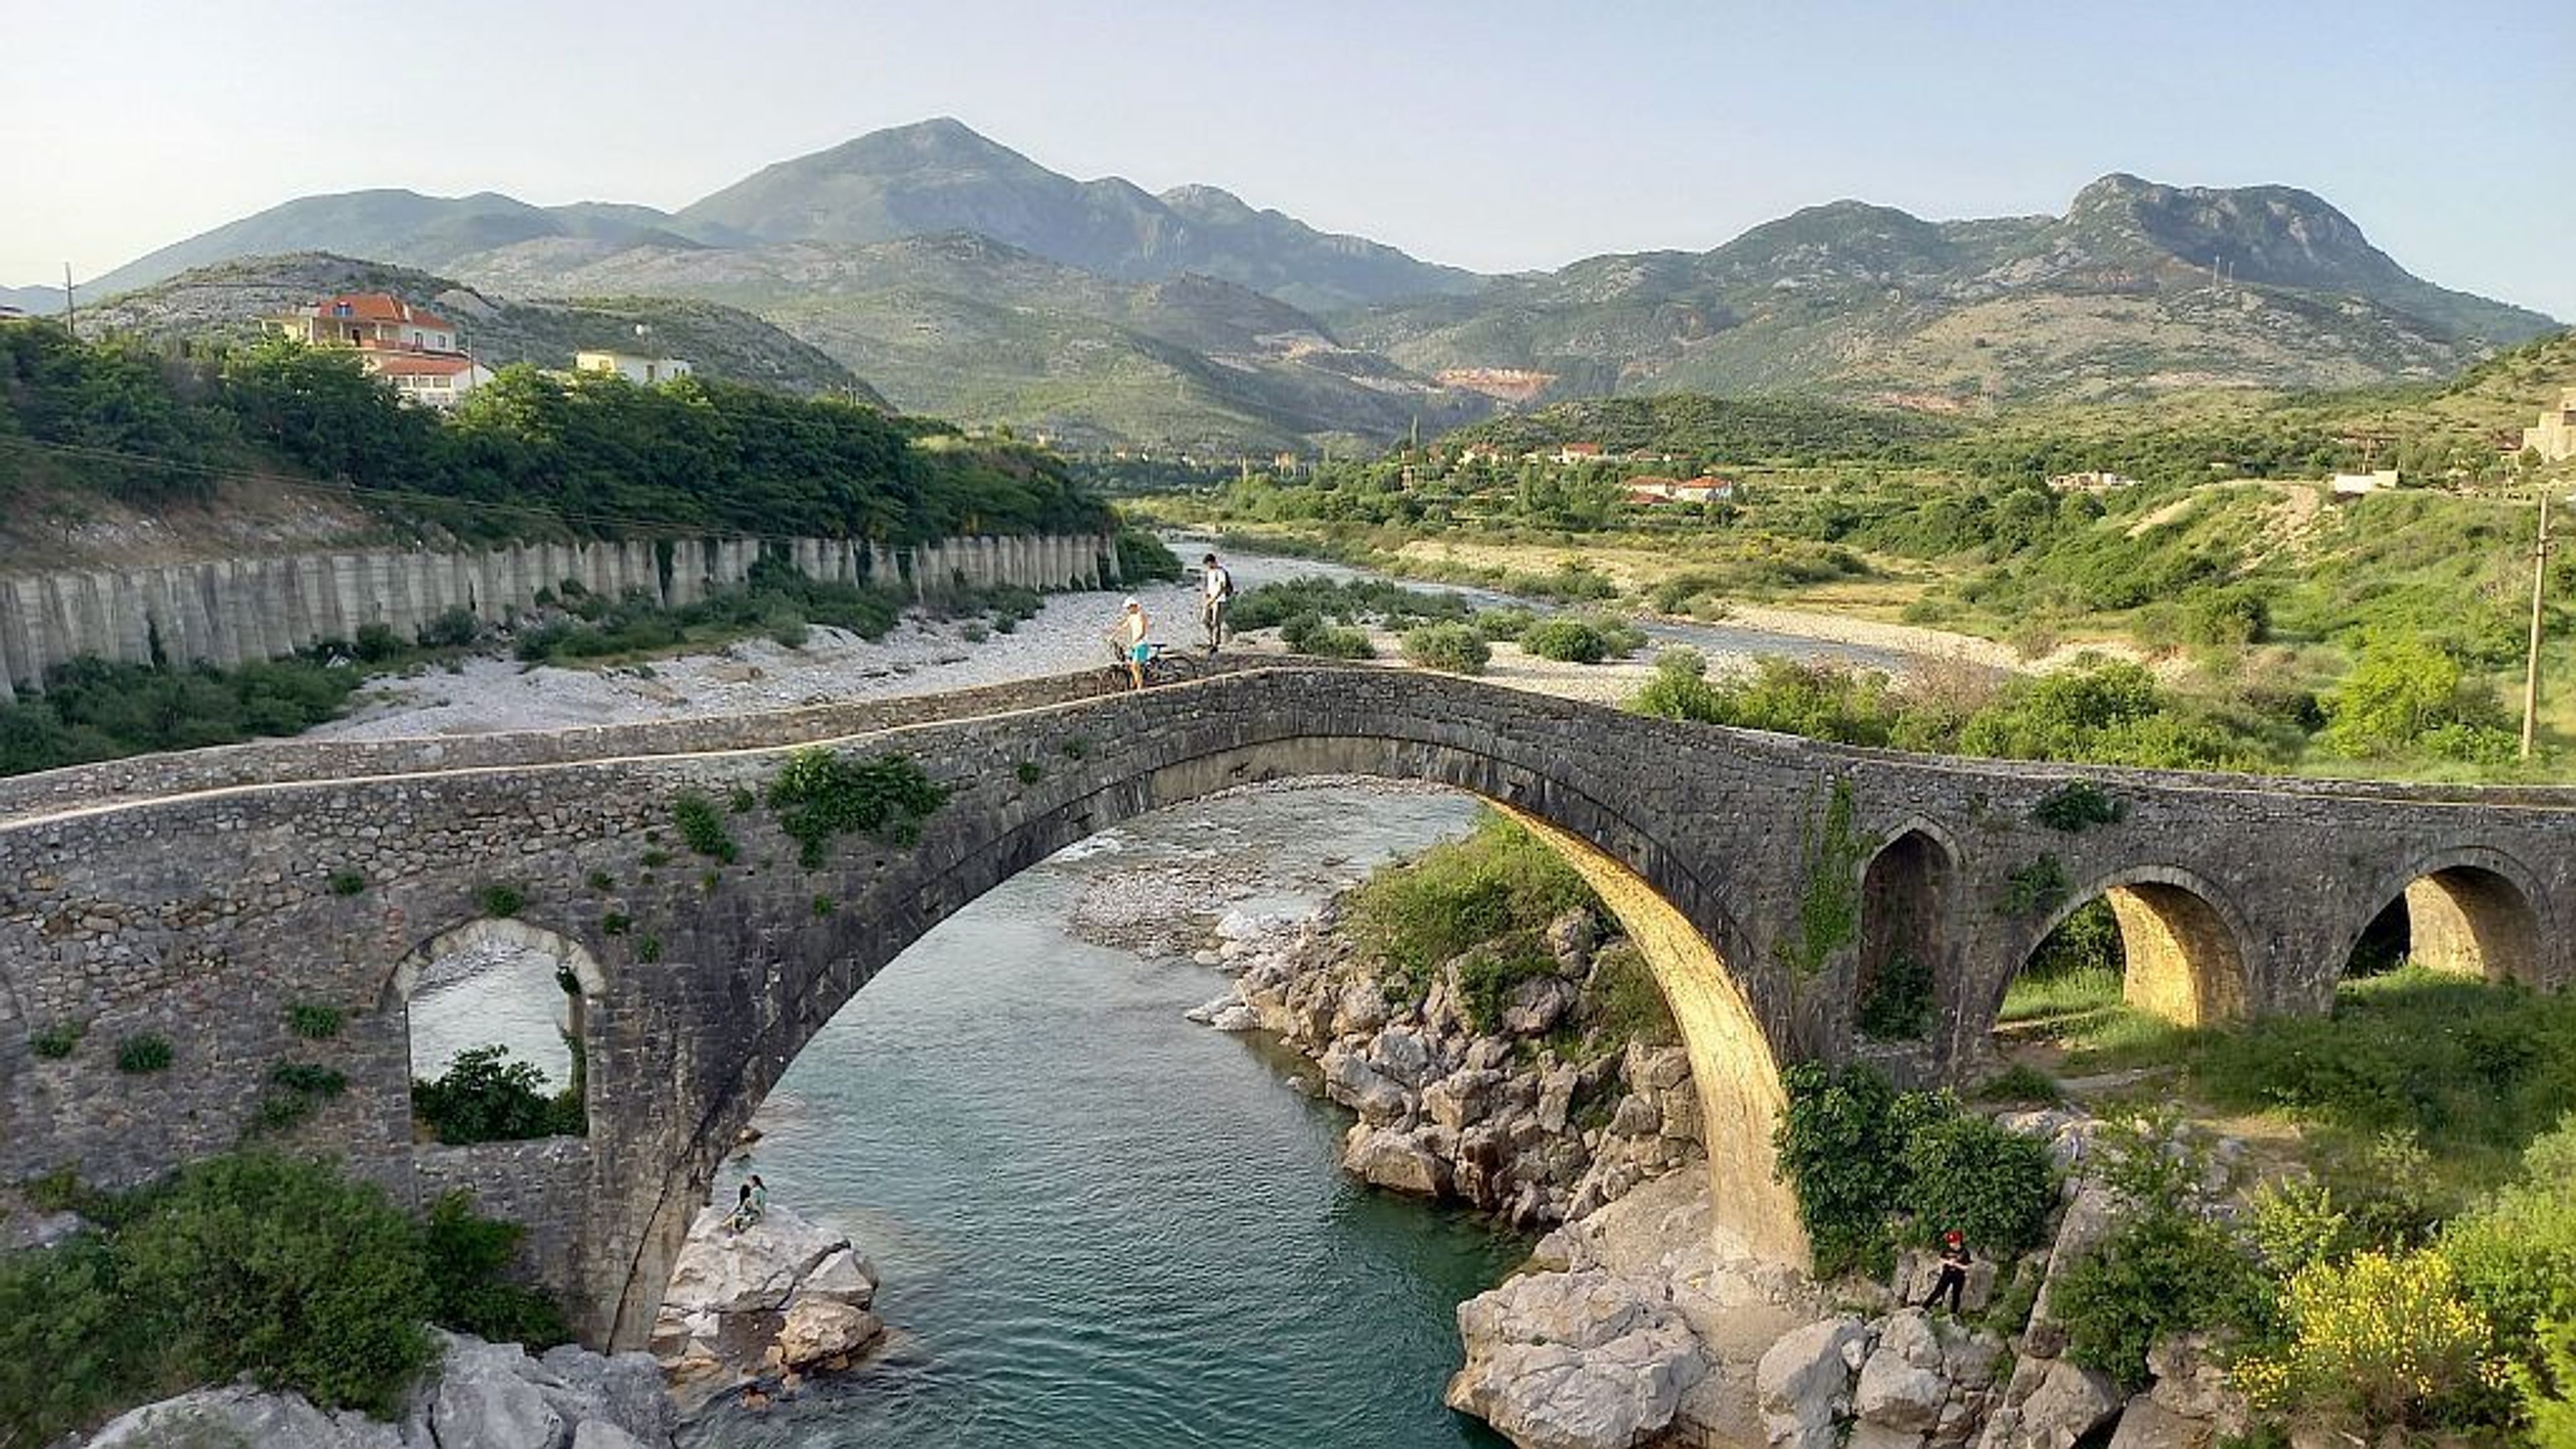 Paesaggio con due ragazzi su un ponte antico e montagne sullo sfondo in Albania